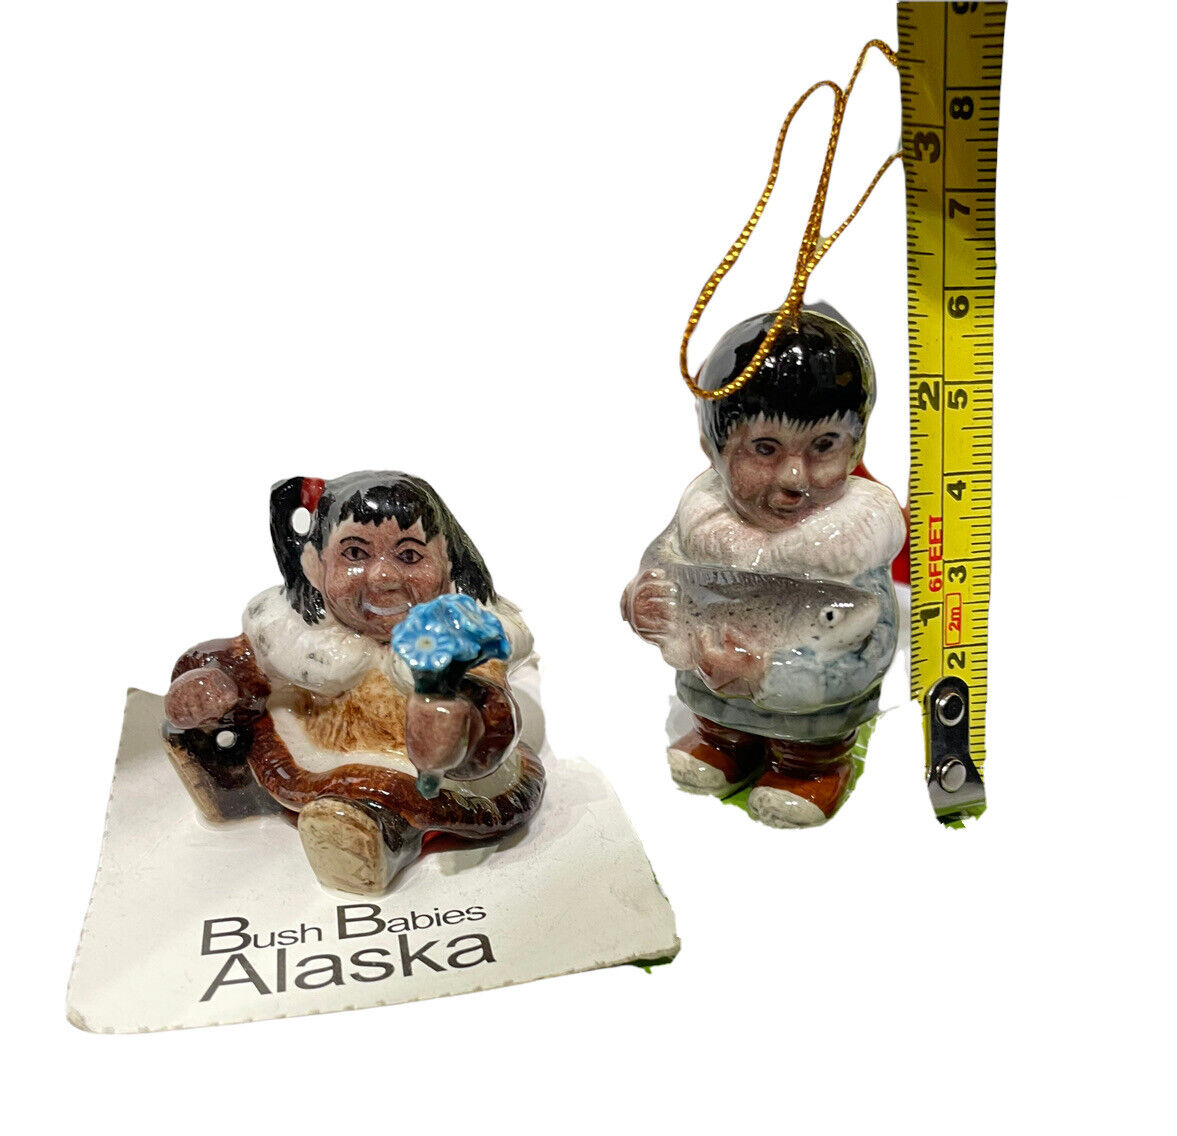 BUSH BABIES ALASKA Lot LK001 LK002 LITTLE CRITTERZ Home Decor Ornaments